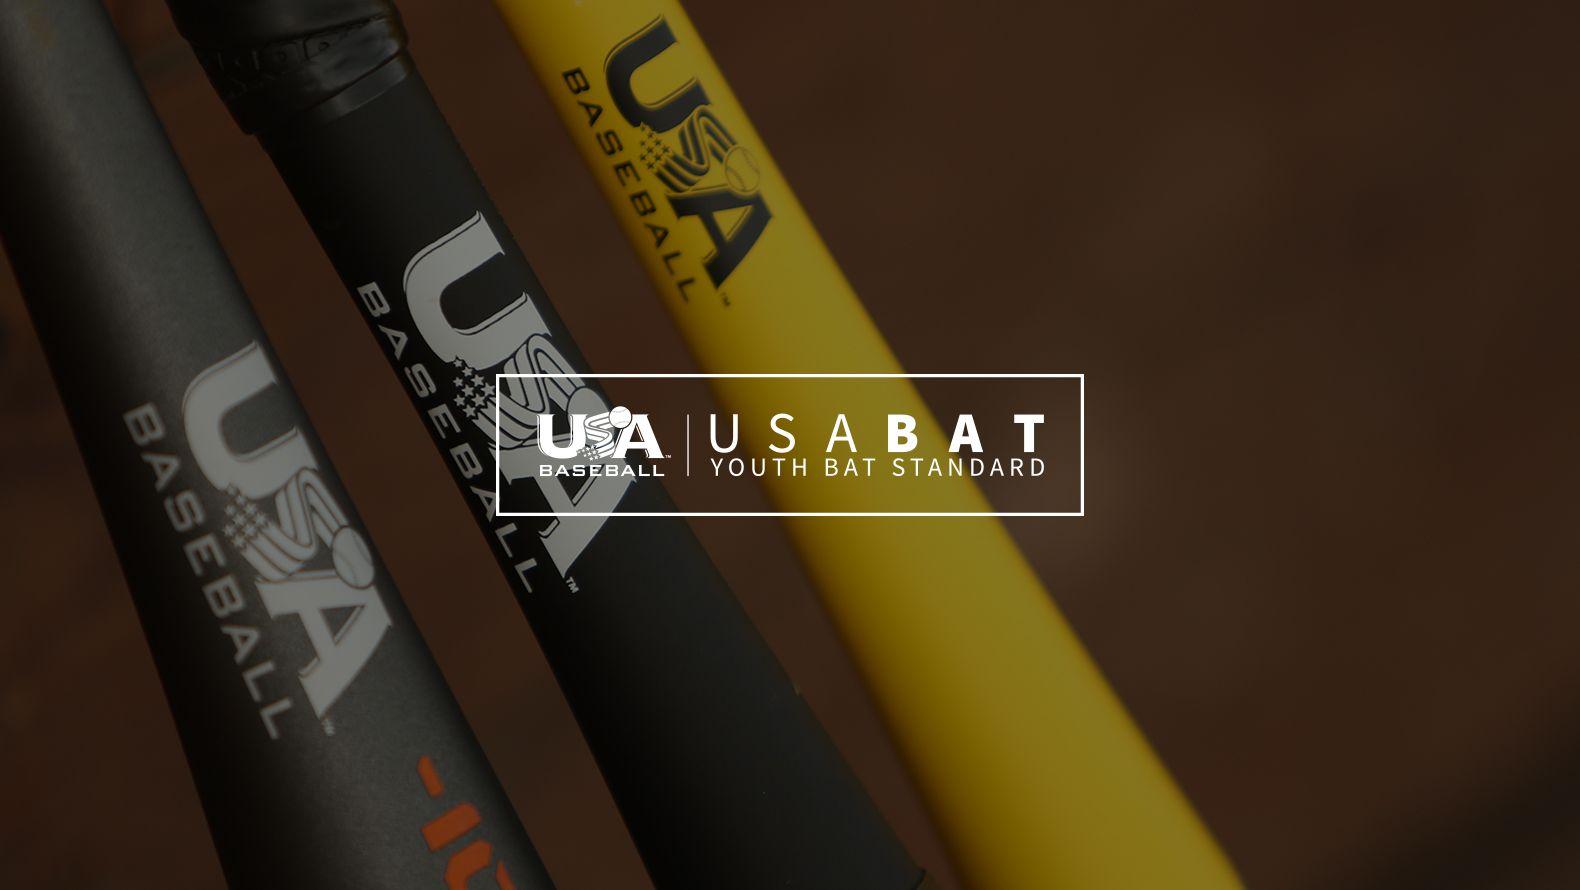 Baseball and Baseball Bat Logo - About USABat